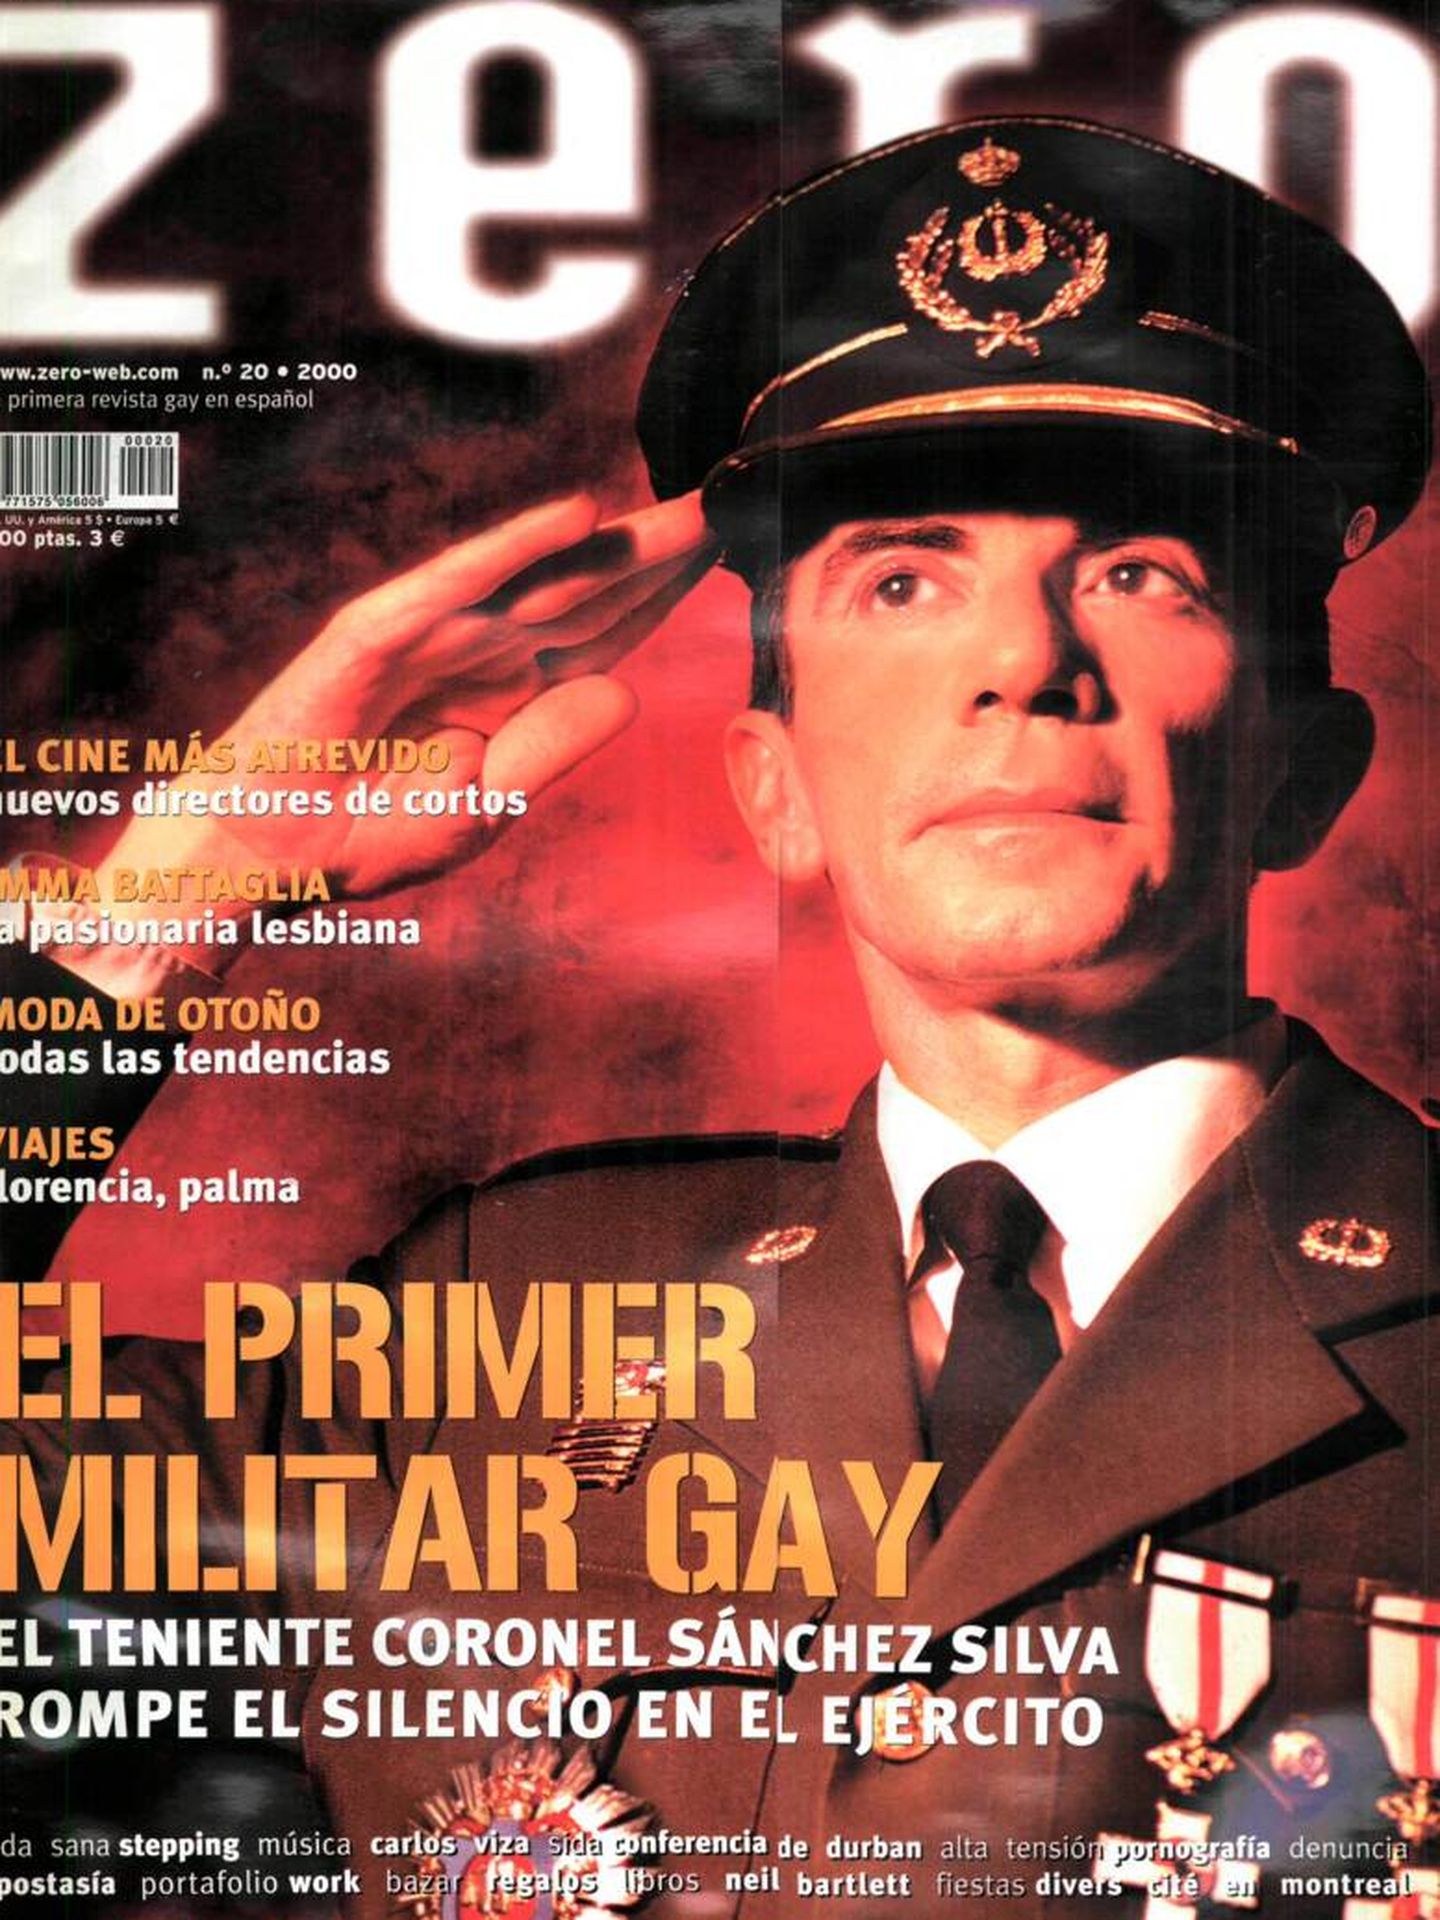 Sánchez Silva, el teniente coronel más valiente, en la portada de 'Zero'. (Cortesía)